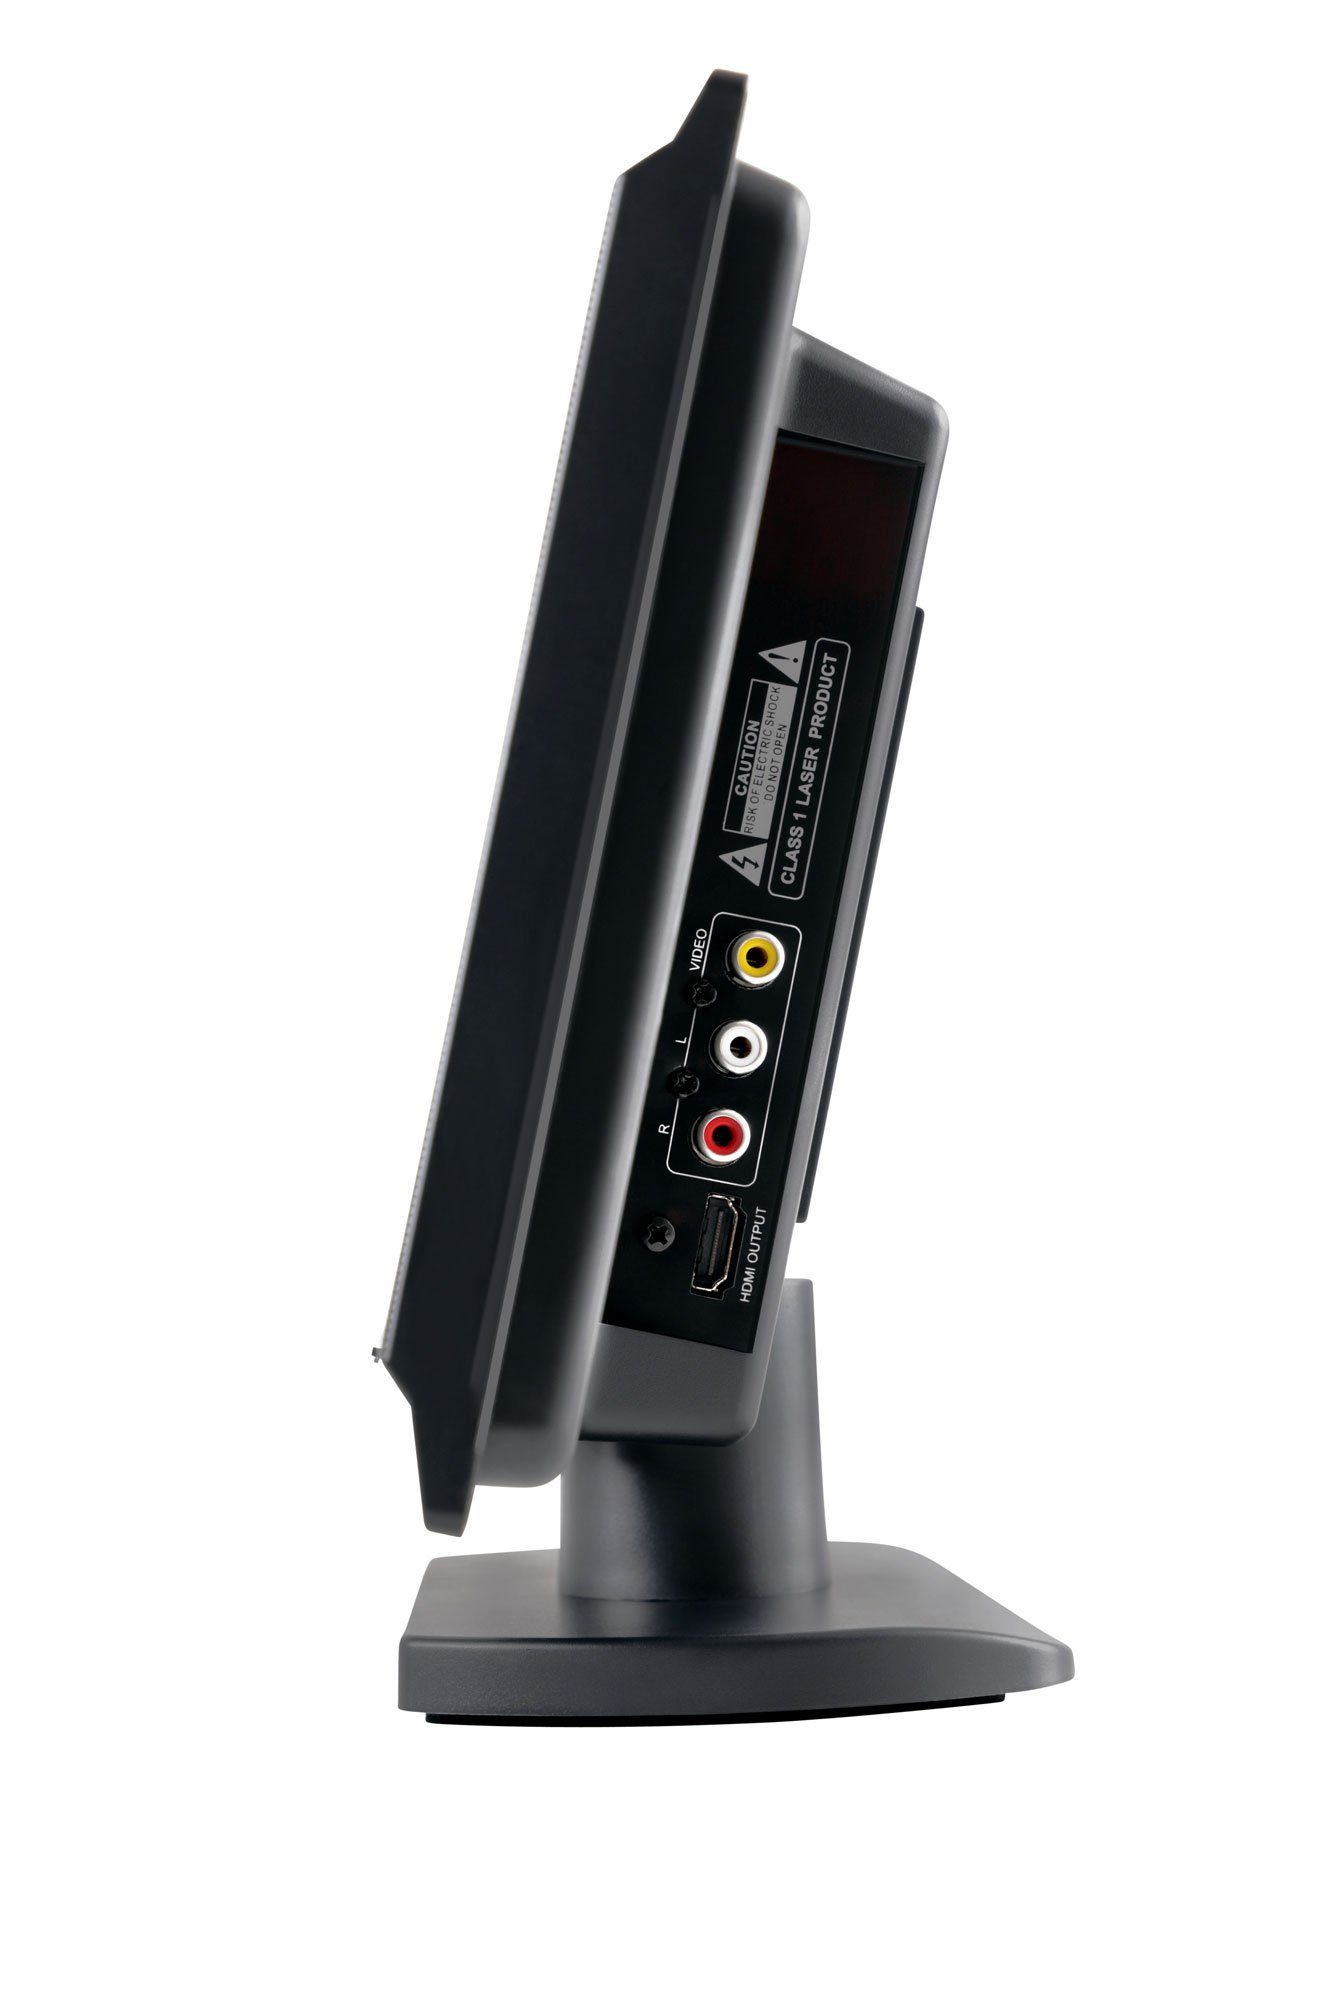 Beatfoxx MC-DVD-90 Vertikal Stereoanlage HDMI AUX) (UKW/MW-Radio, mit W, USB/SD, Microanlage 6,00 Bluetooth, und DVD-Player, CD/MP3